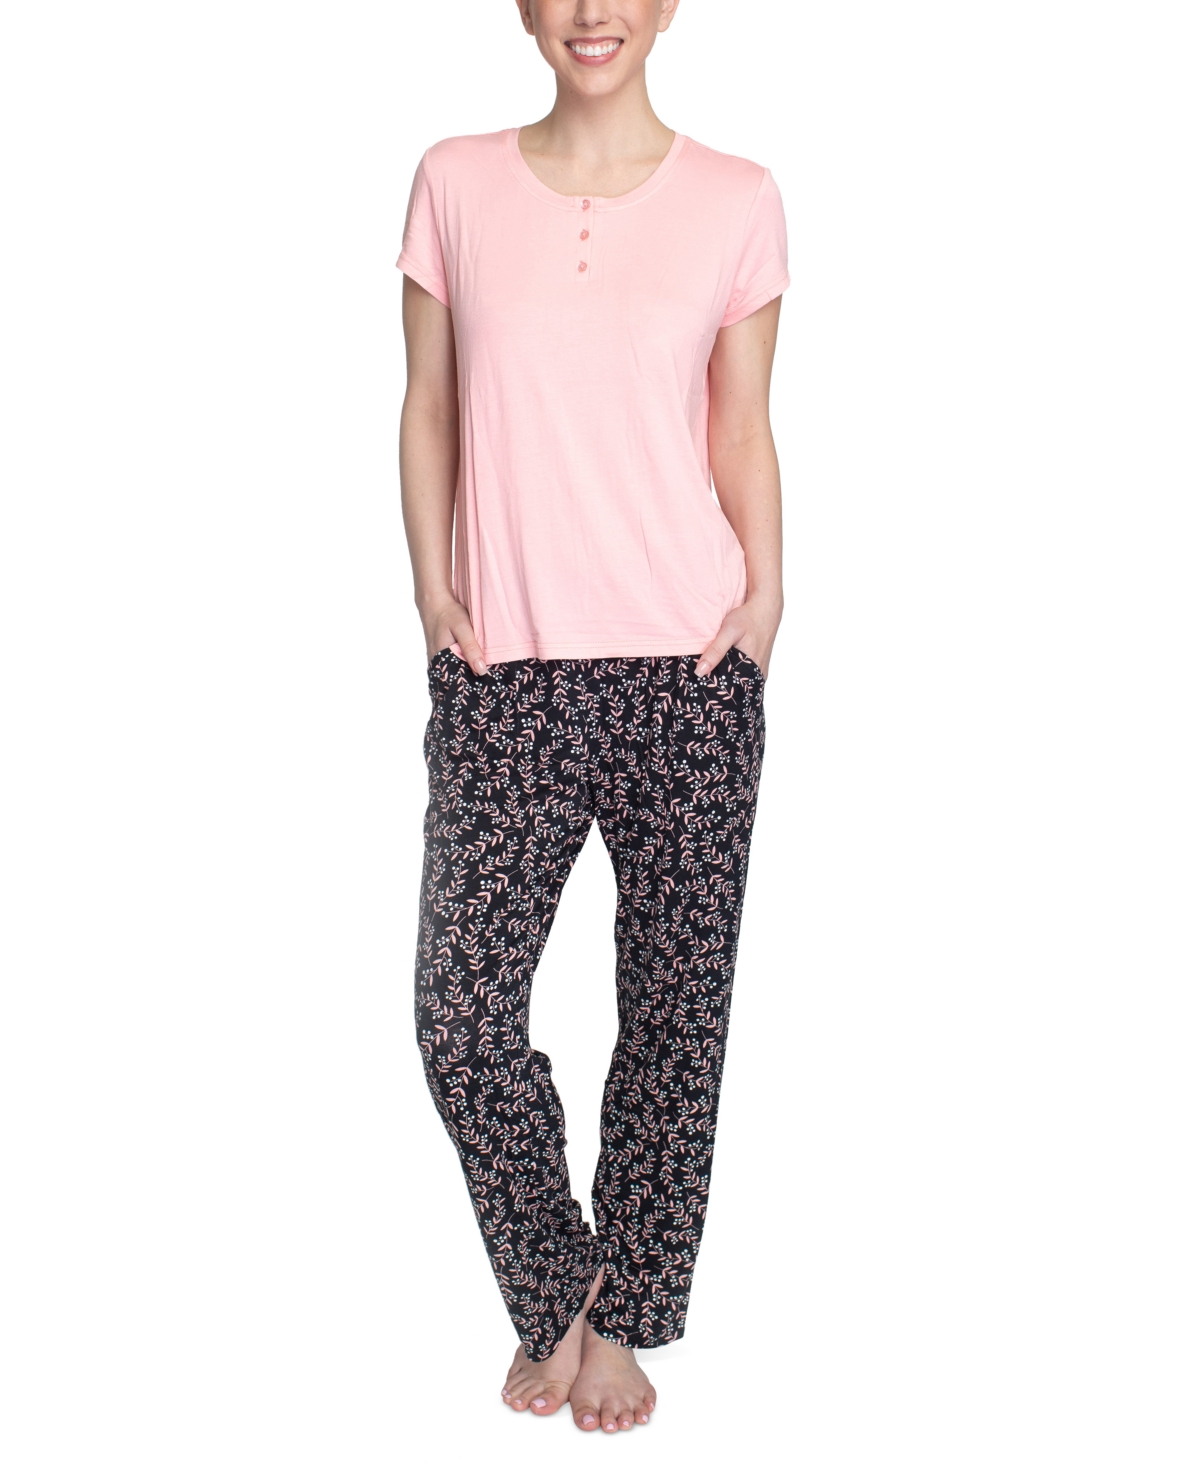 Hanes Women's Short Sleeve Henley Top & Pajama Pants Set